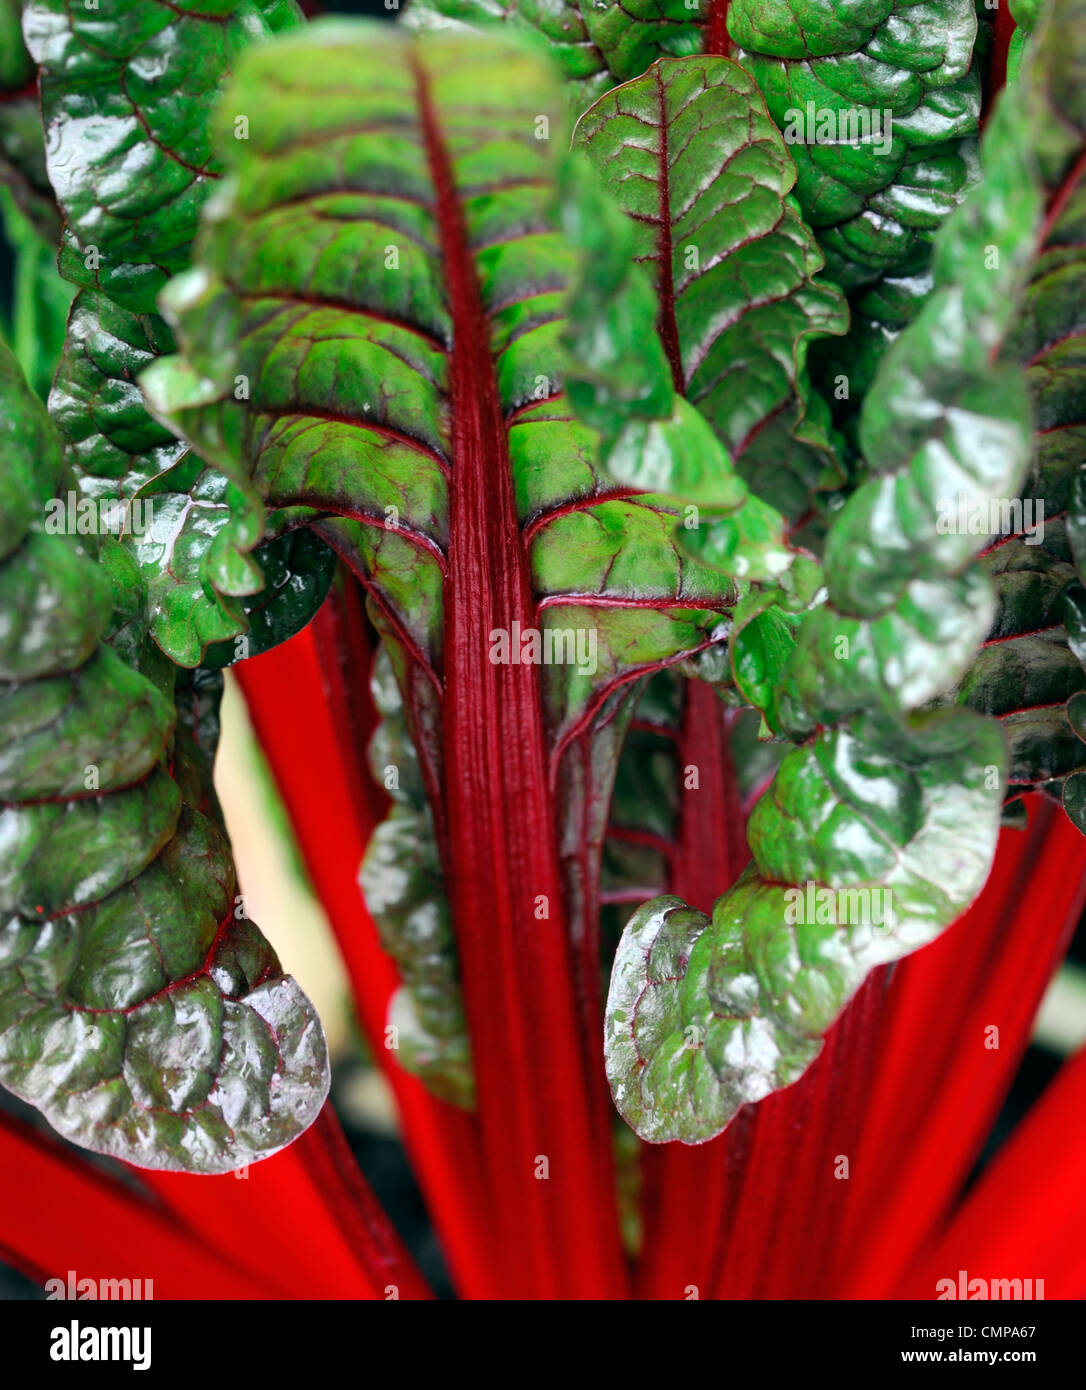 Beta Vulgaris Rhabarber Ruby Mangold Nahaufnahmen Pflanzen Porträts essbaren Gemüse wachsen helle rote Adern geäderten grünen Blättern stammt Stockfoto